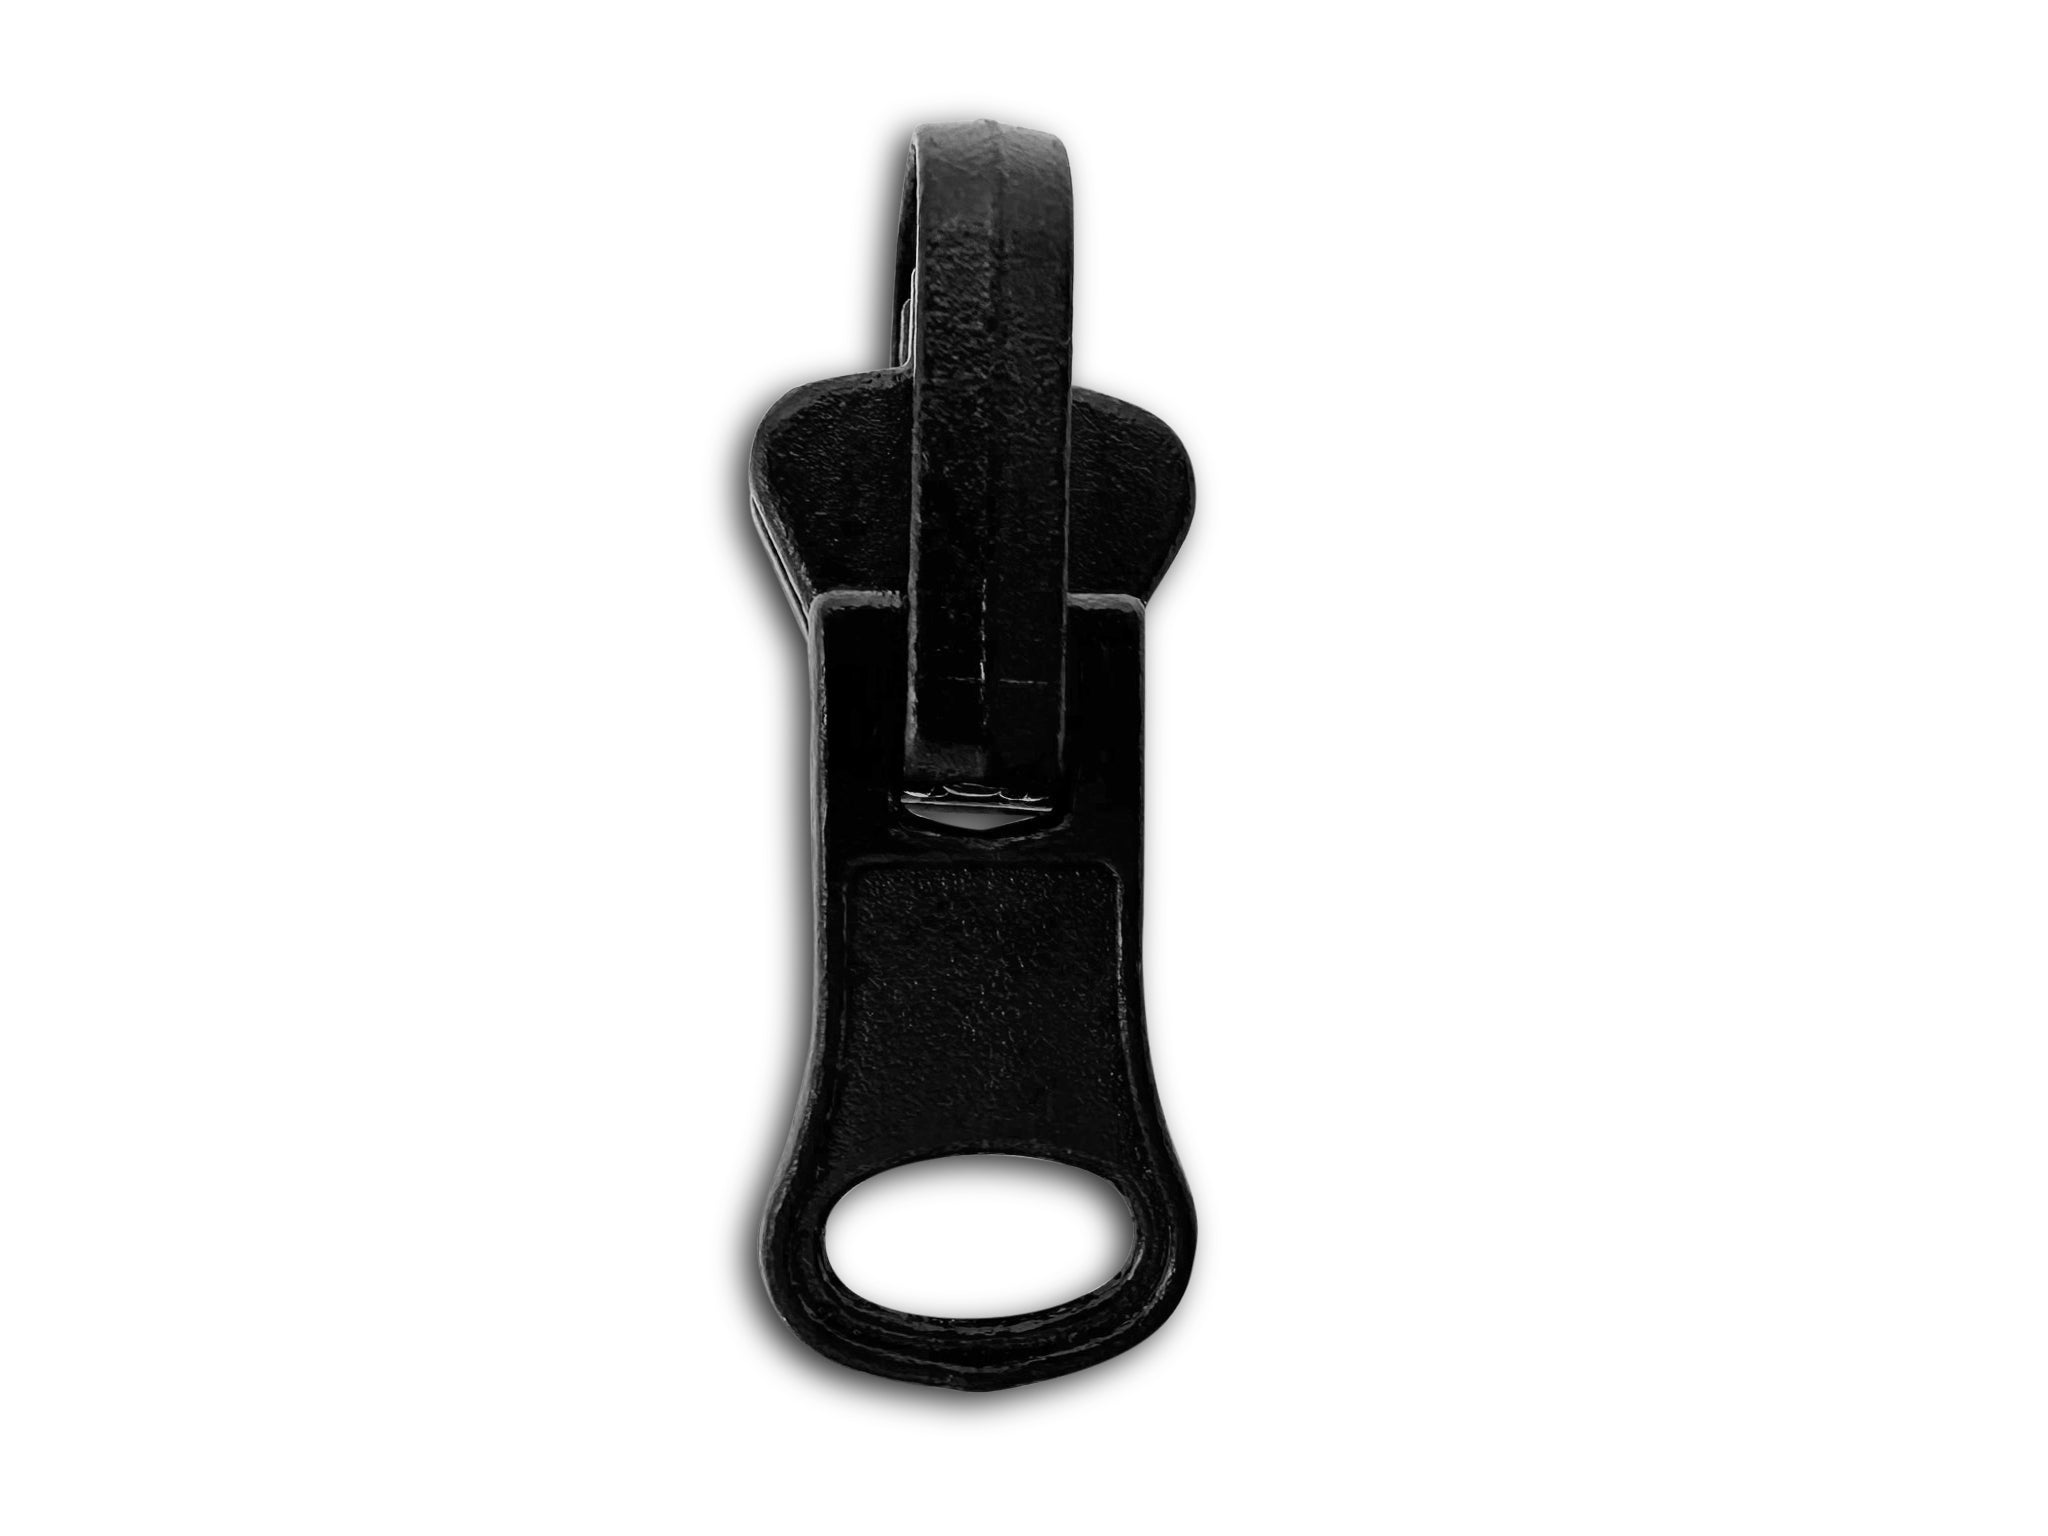 Handmade Zipper Pulls, 5 Metal Zipper Pulls, Pack of 5 